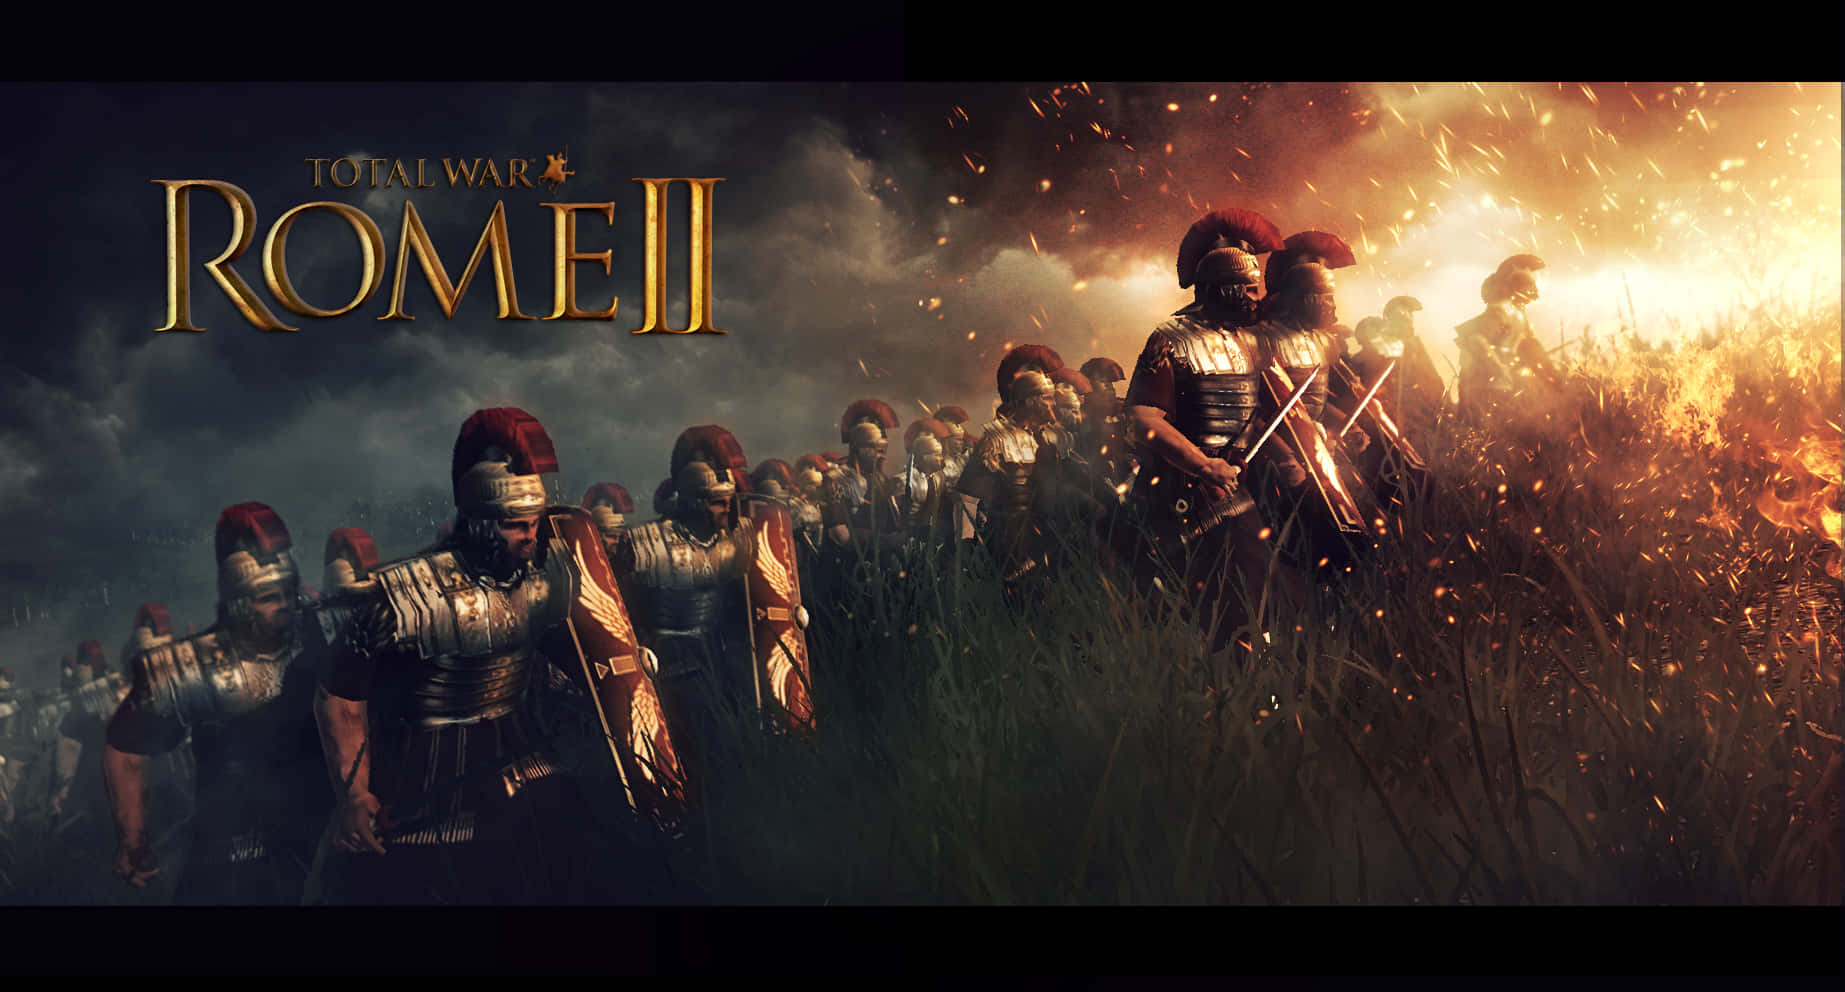 Slagetfortsätter General Under Total War: Rome 2